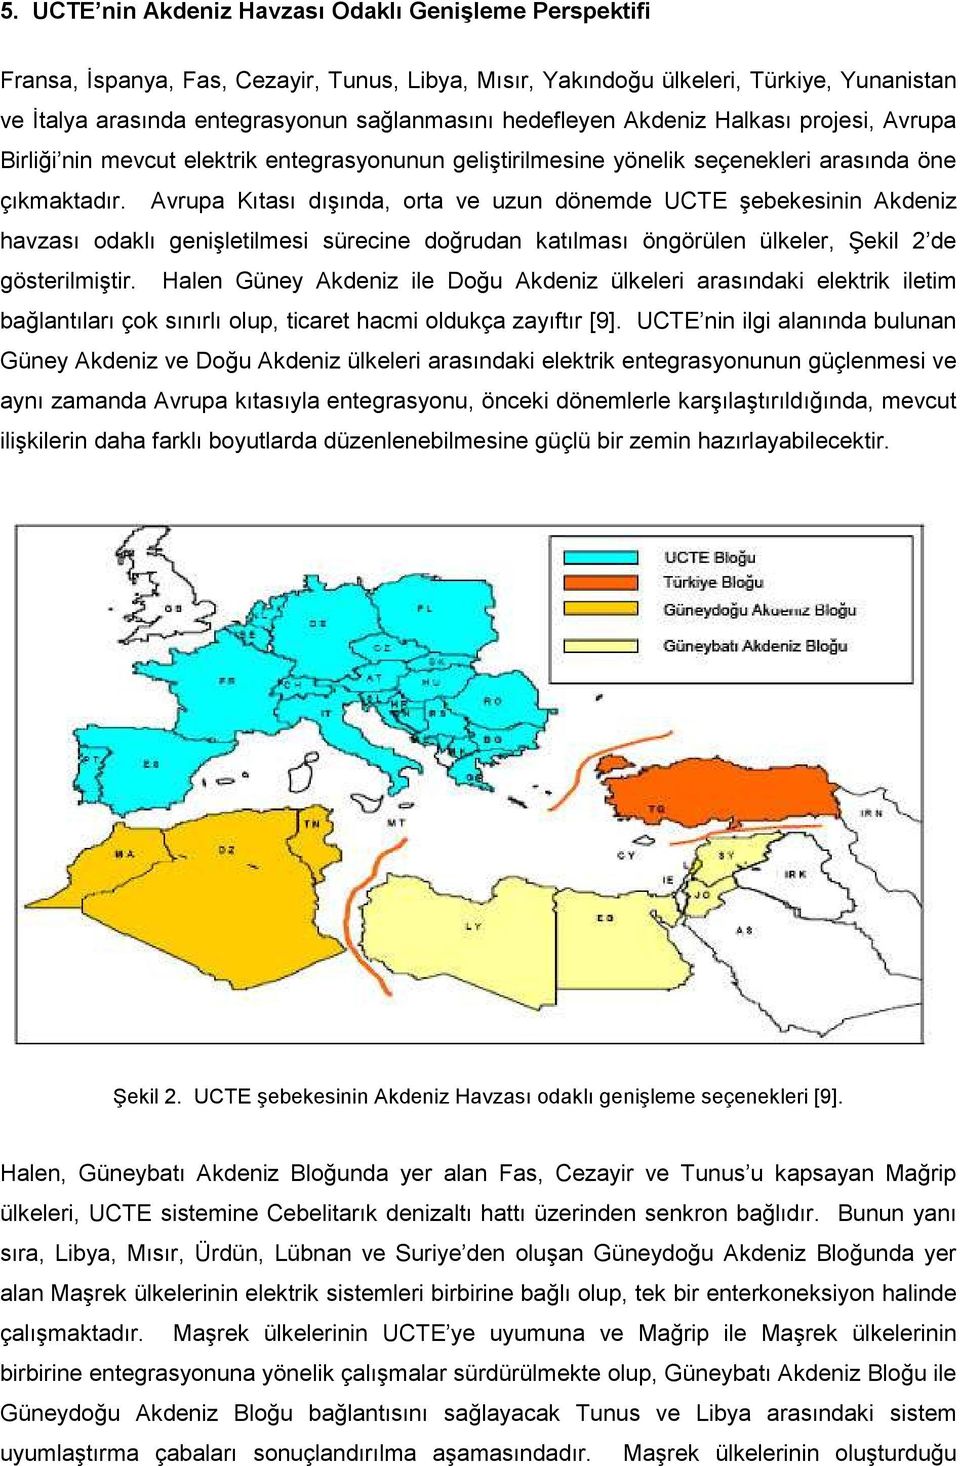 Avrupa Kıtası dışında, orta ve uzun dönemde UCTE şebekesinin Akdeniz havzası odaklı genişletilmesi sürecine doğrudan katılması öngörülen ülkeler, Şekil 2 de gösterilmiştir.